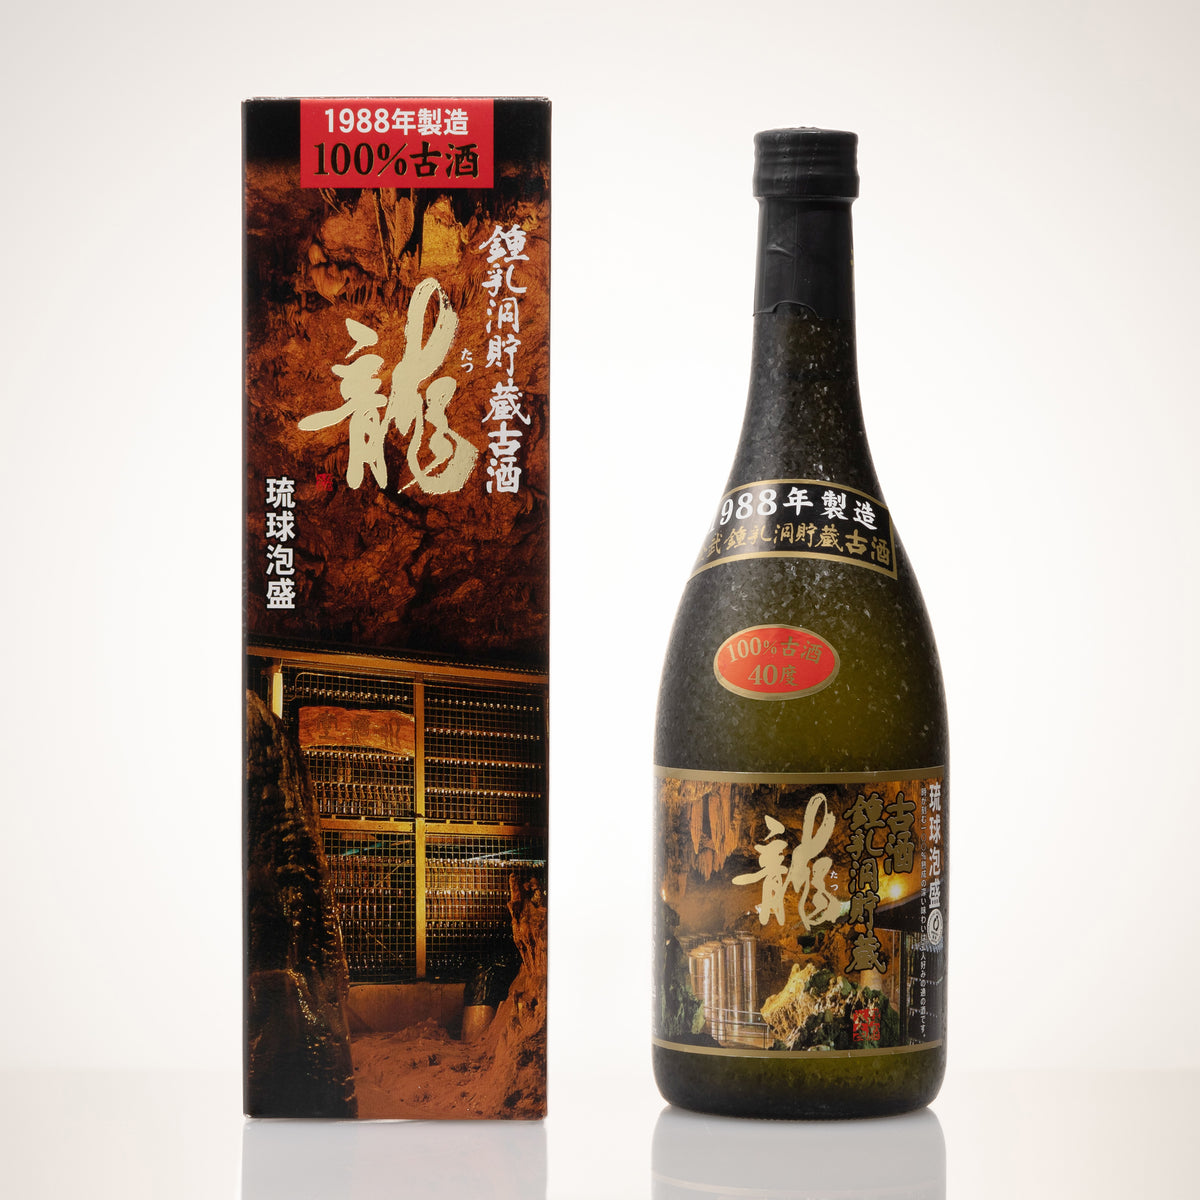 1988年製造 龍 鍾乳洞古酒 40度 ❘地下鍾乳洞で長年熟成させ続けたこだわりの古酒 – shimmer online